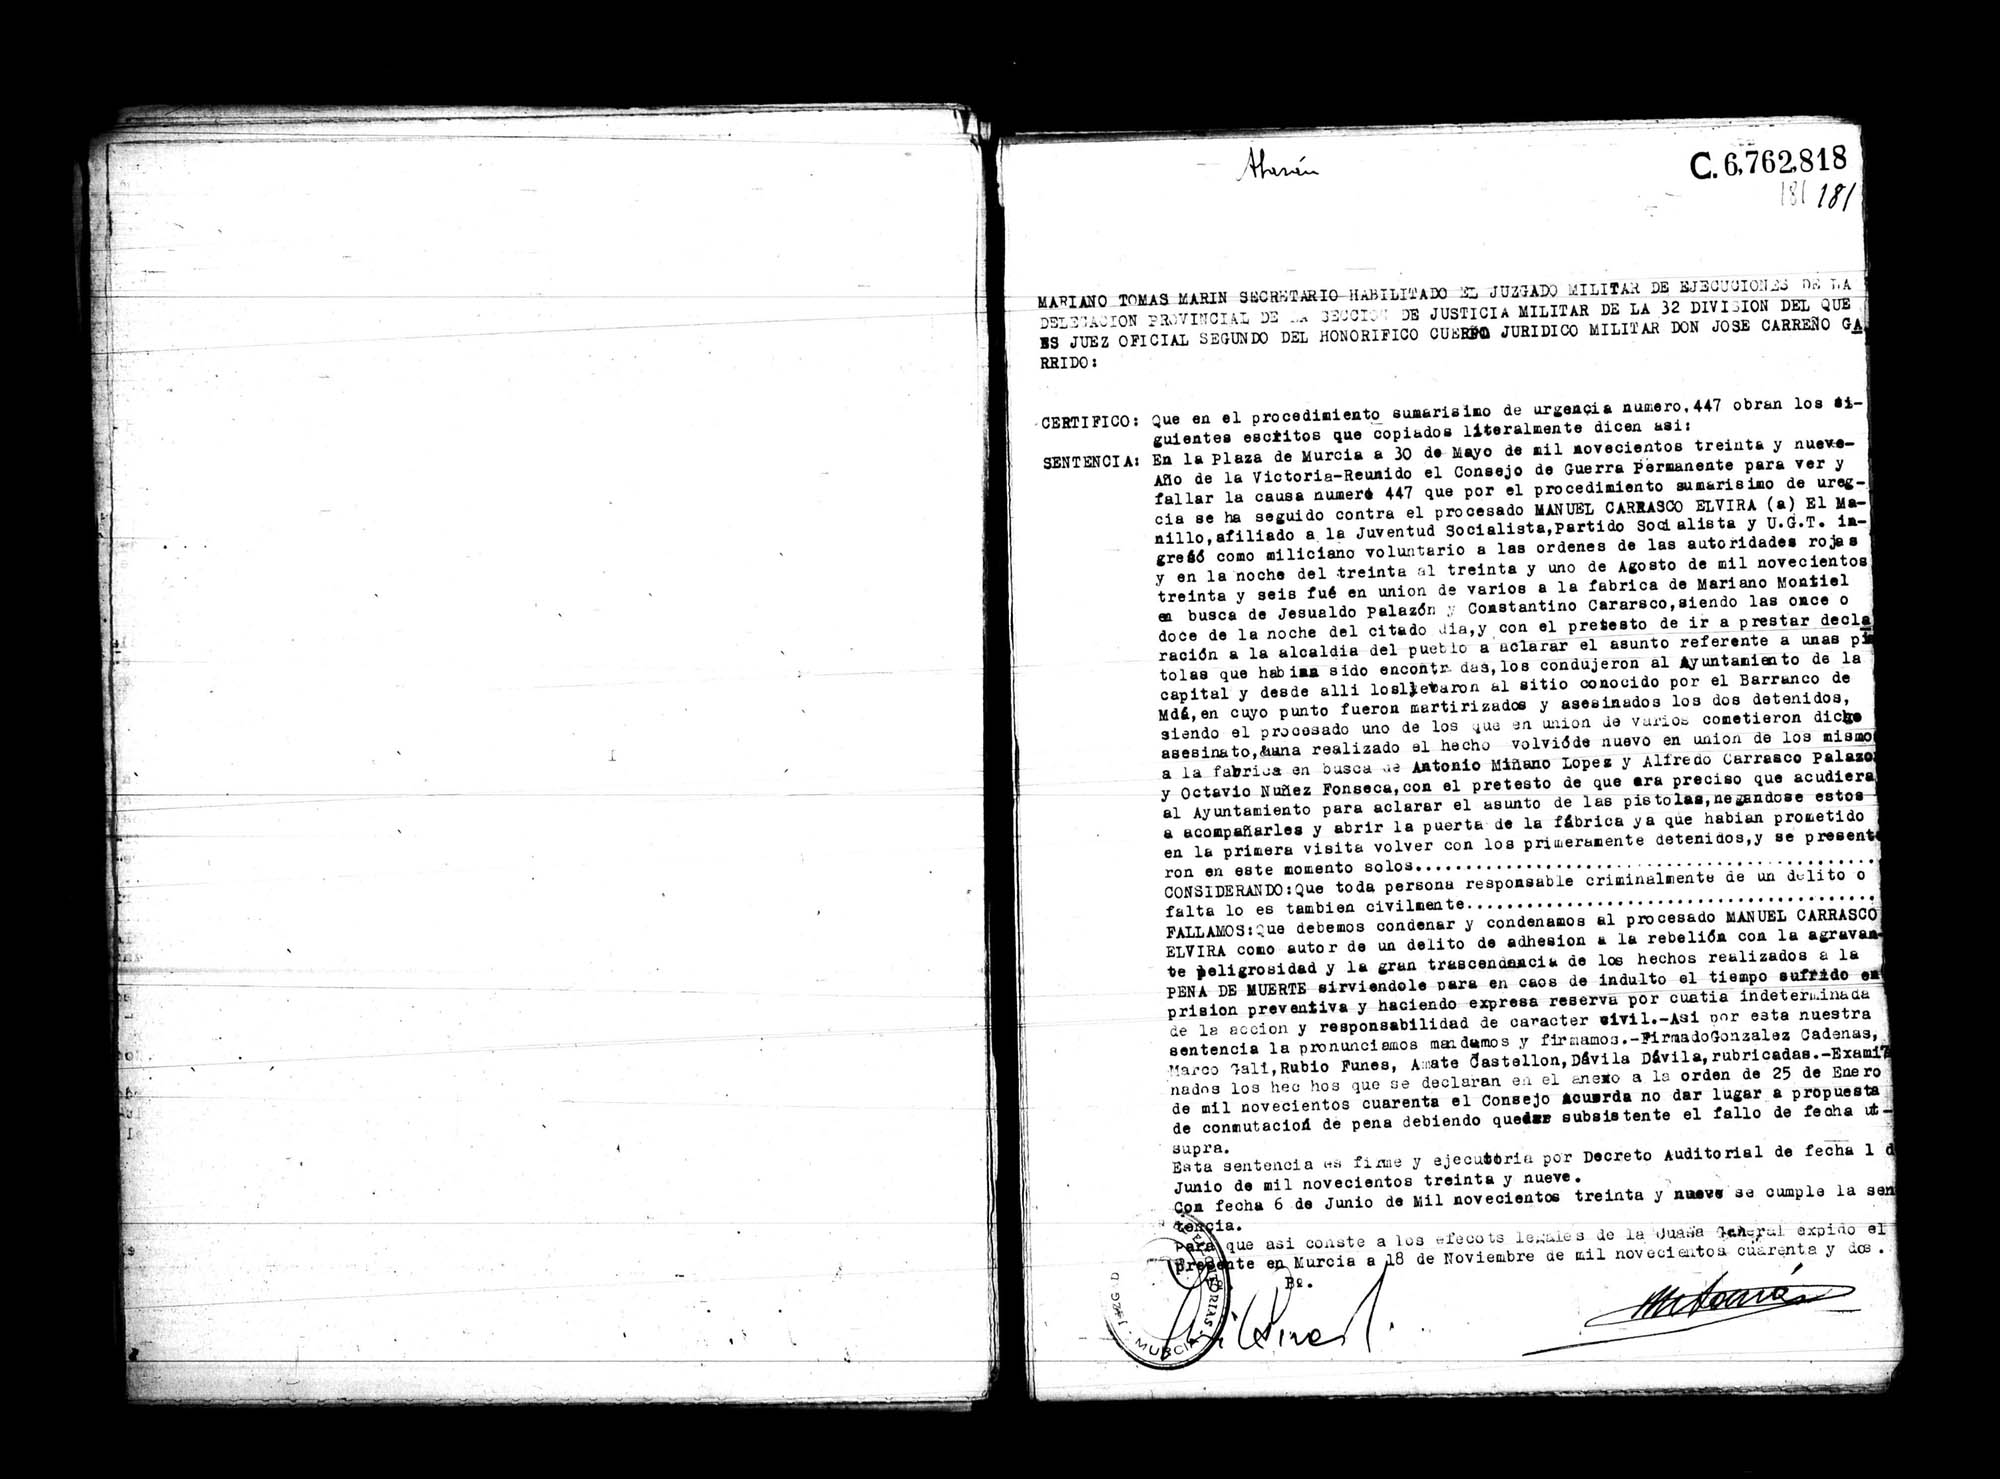 Certificado de la sentencia pronunciada contra Manuel Carrasco Elvira, causa 447, el 30 de mayo de 1939 en Murcia.